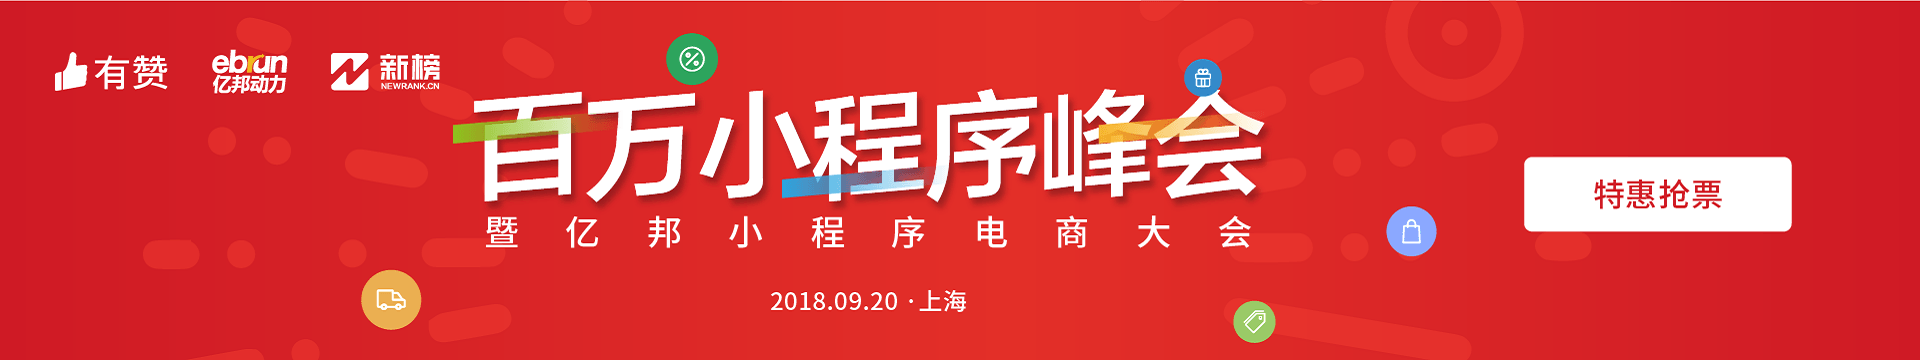 2018百万小程序峰会上海站暨亿邦小程序电商大会